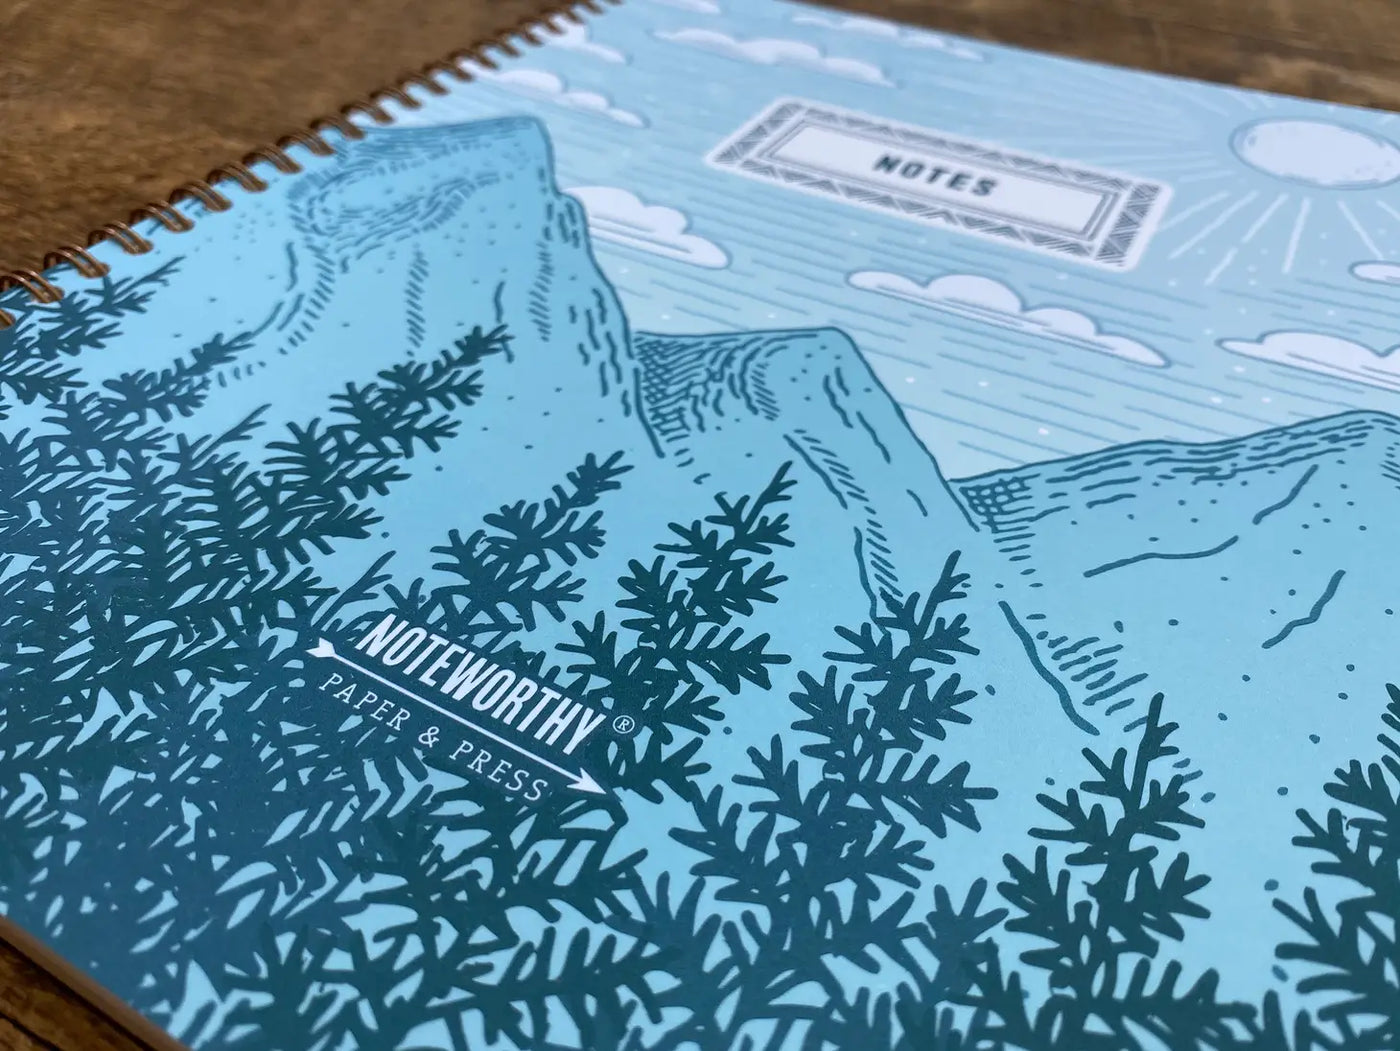 Mountain Air Spiral Notebook